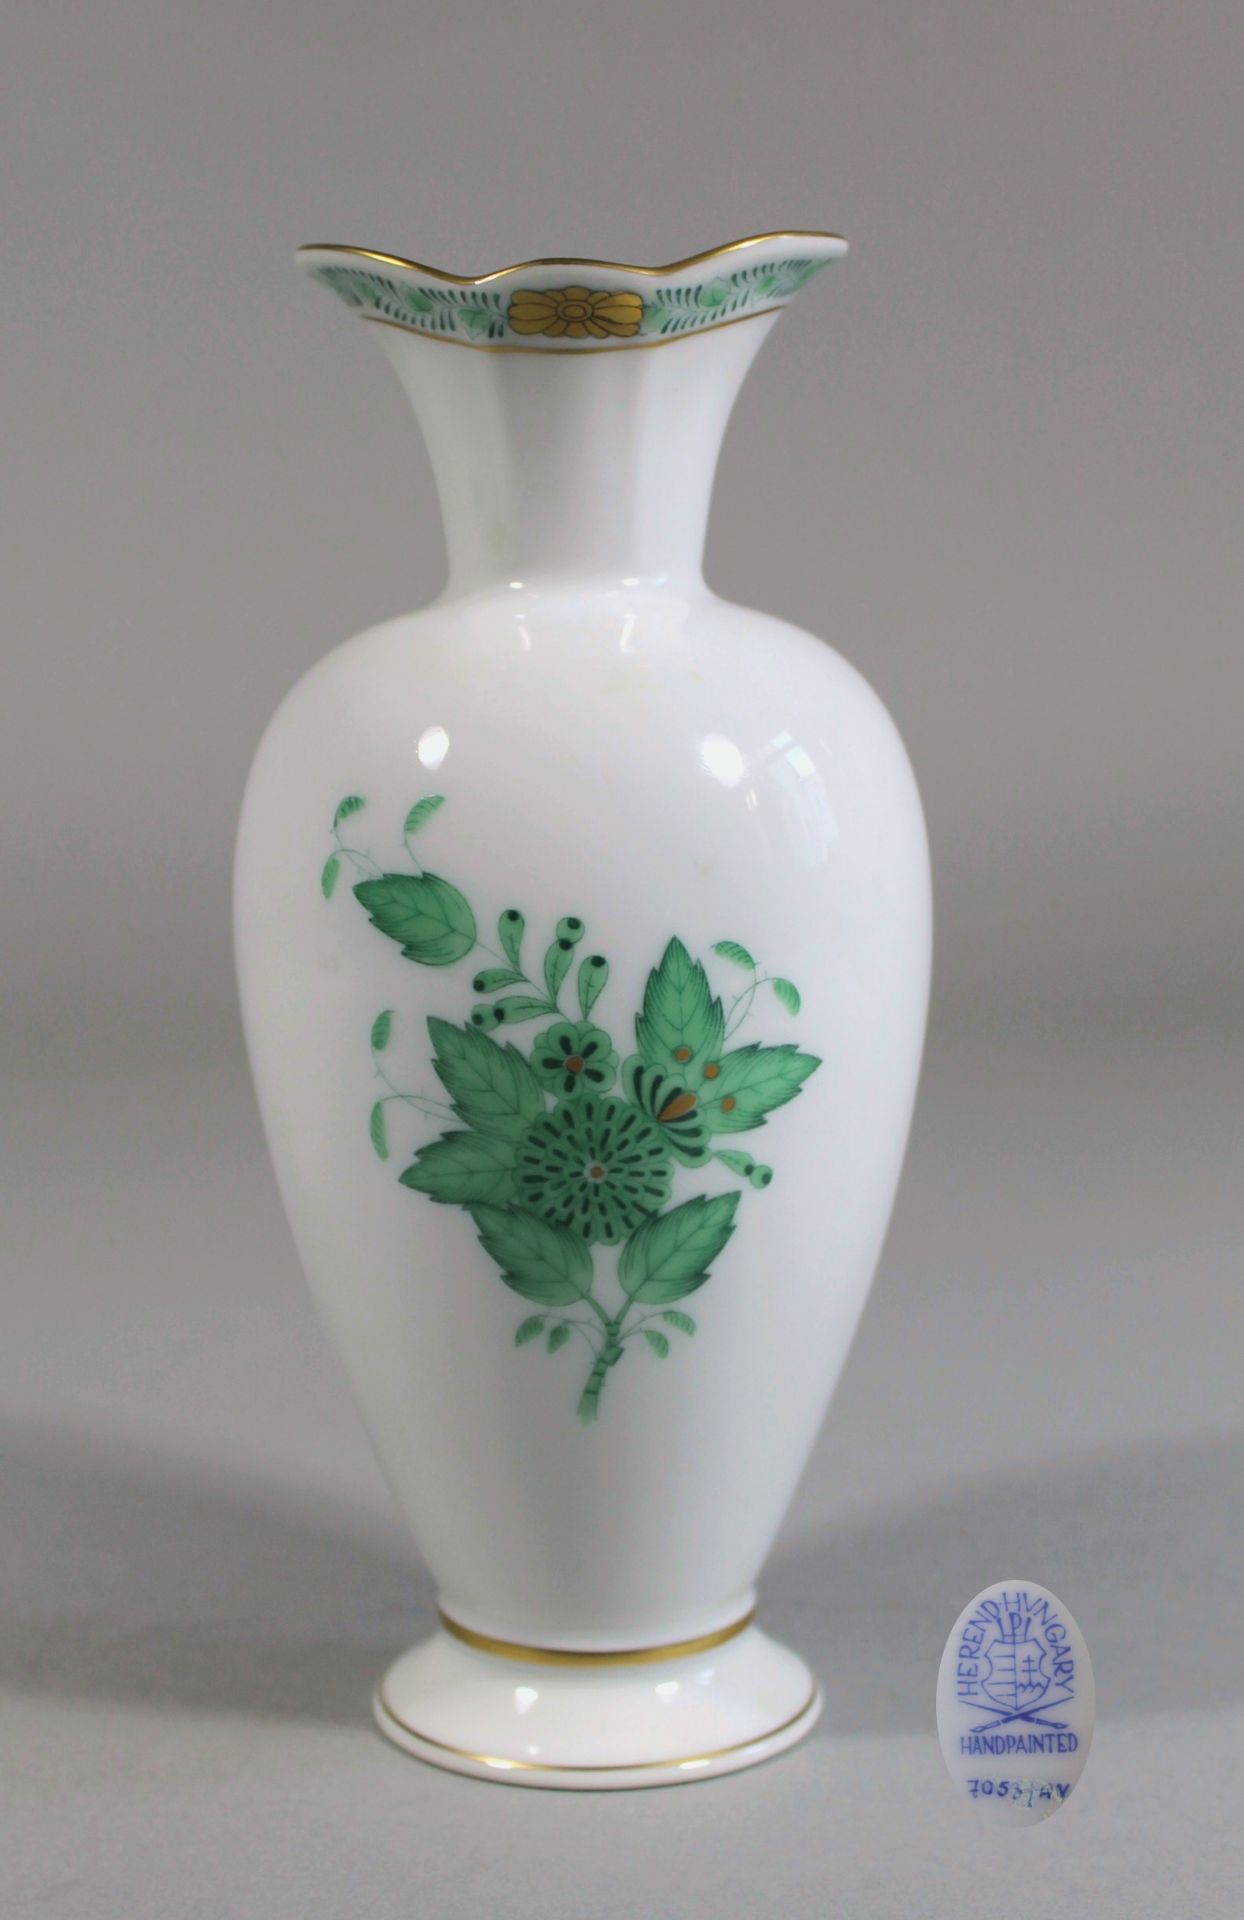 1 Vase Porzellan "Herend", Apponydekor in grün, Goldstaffage, aufglasur, H ca. 19,5cm,